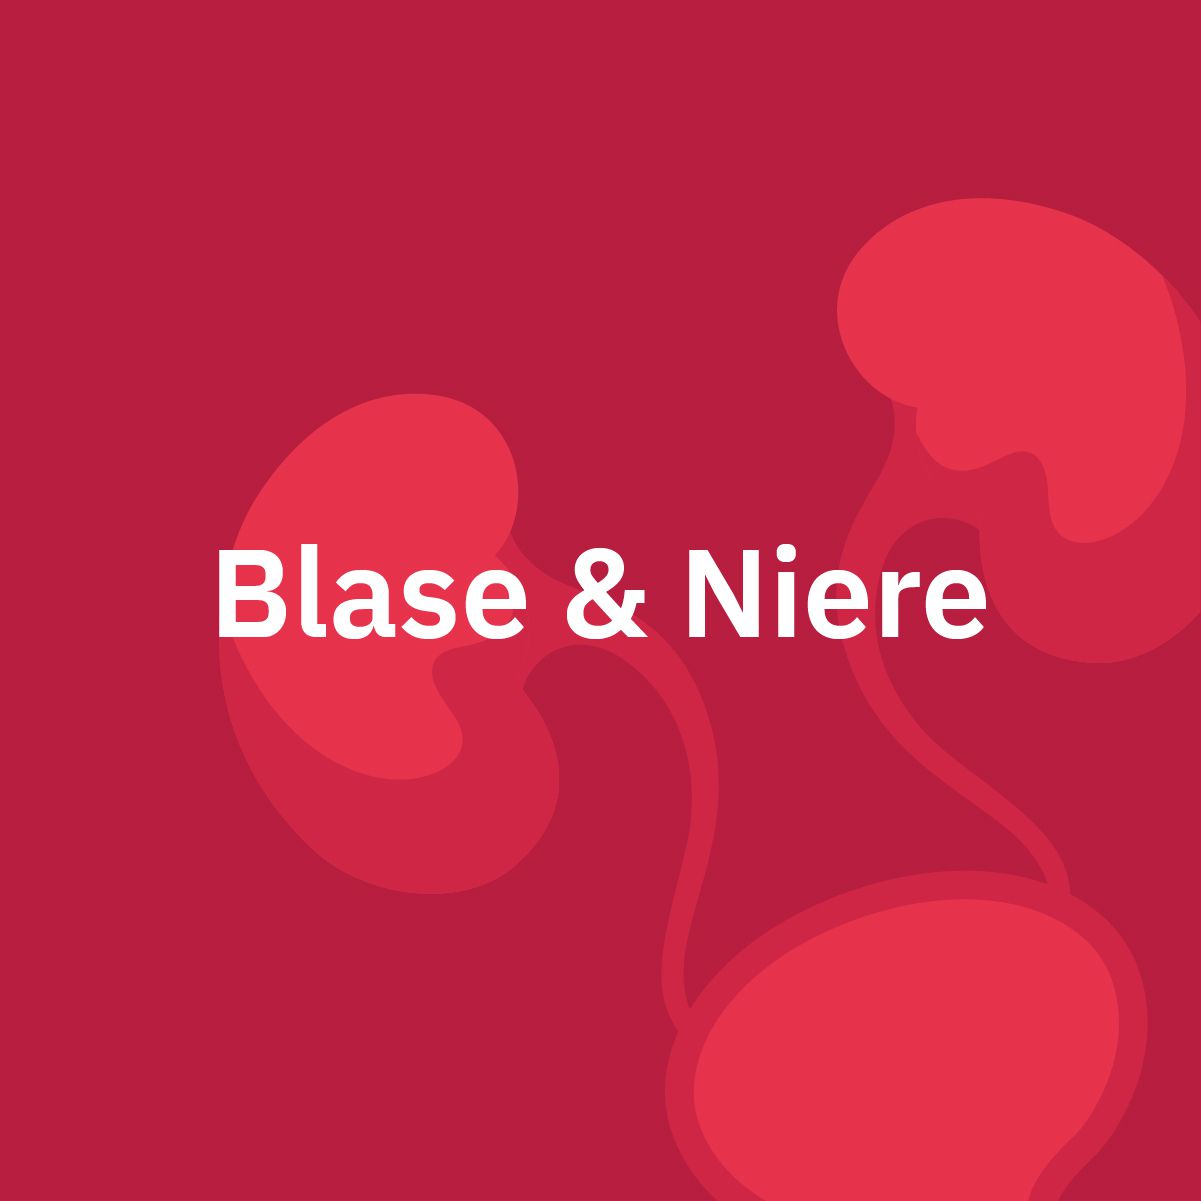 Blase & Niere